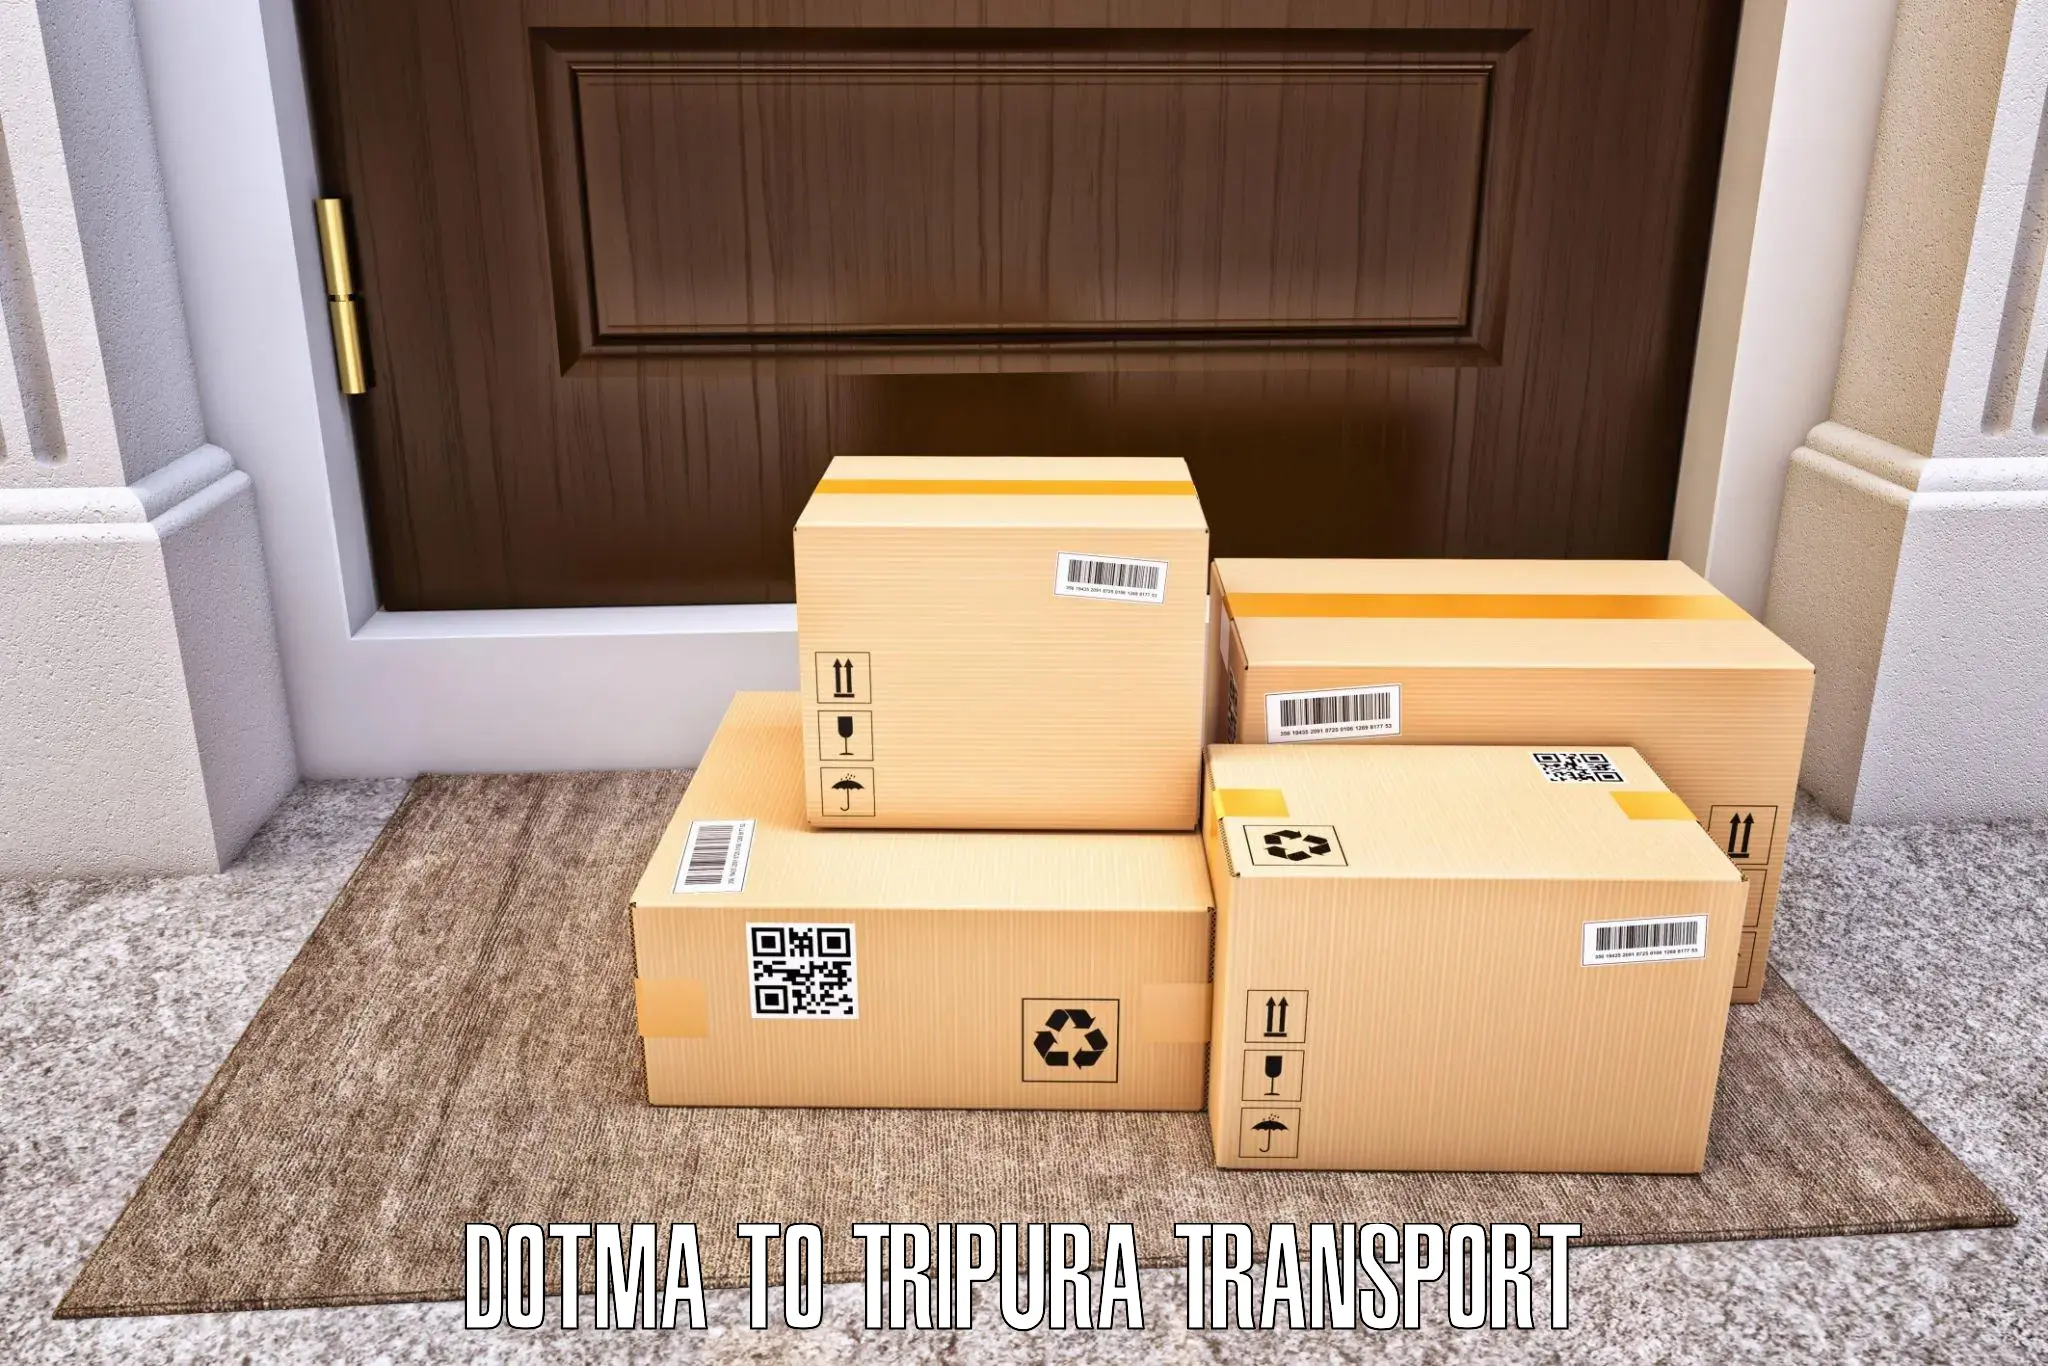 Vehicle transport services Dotma to Sonamura